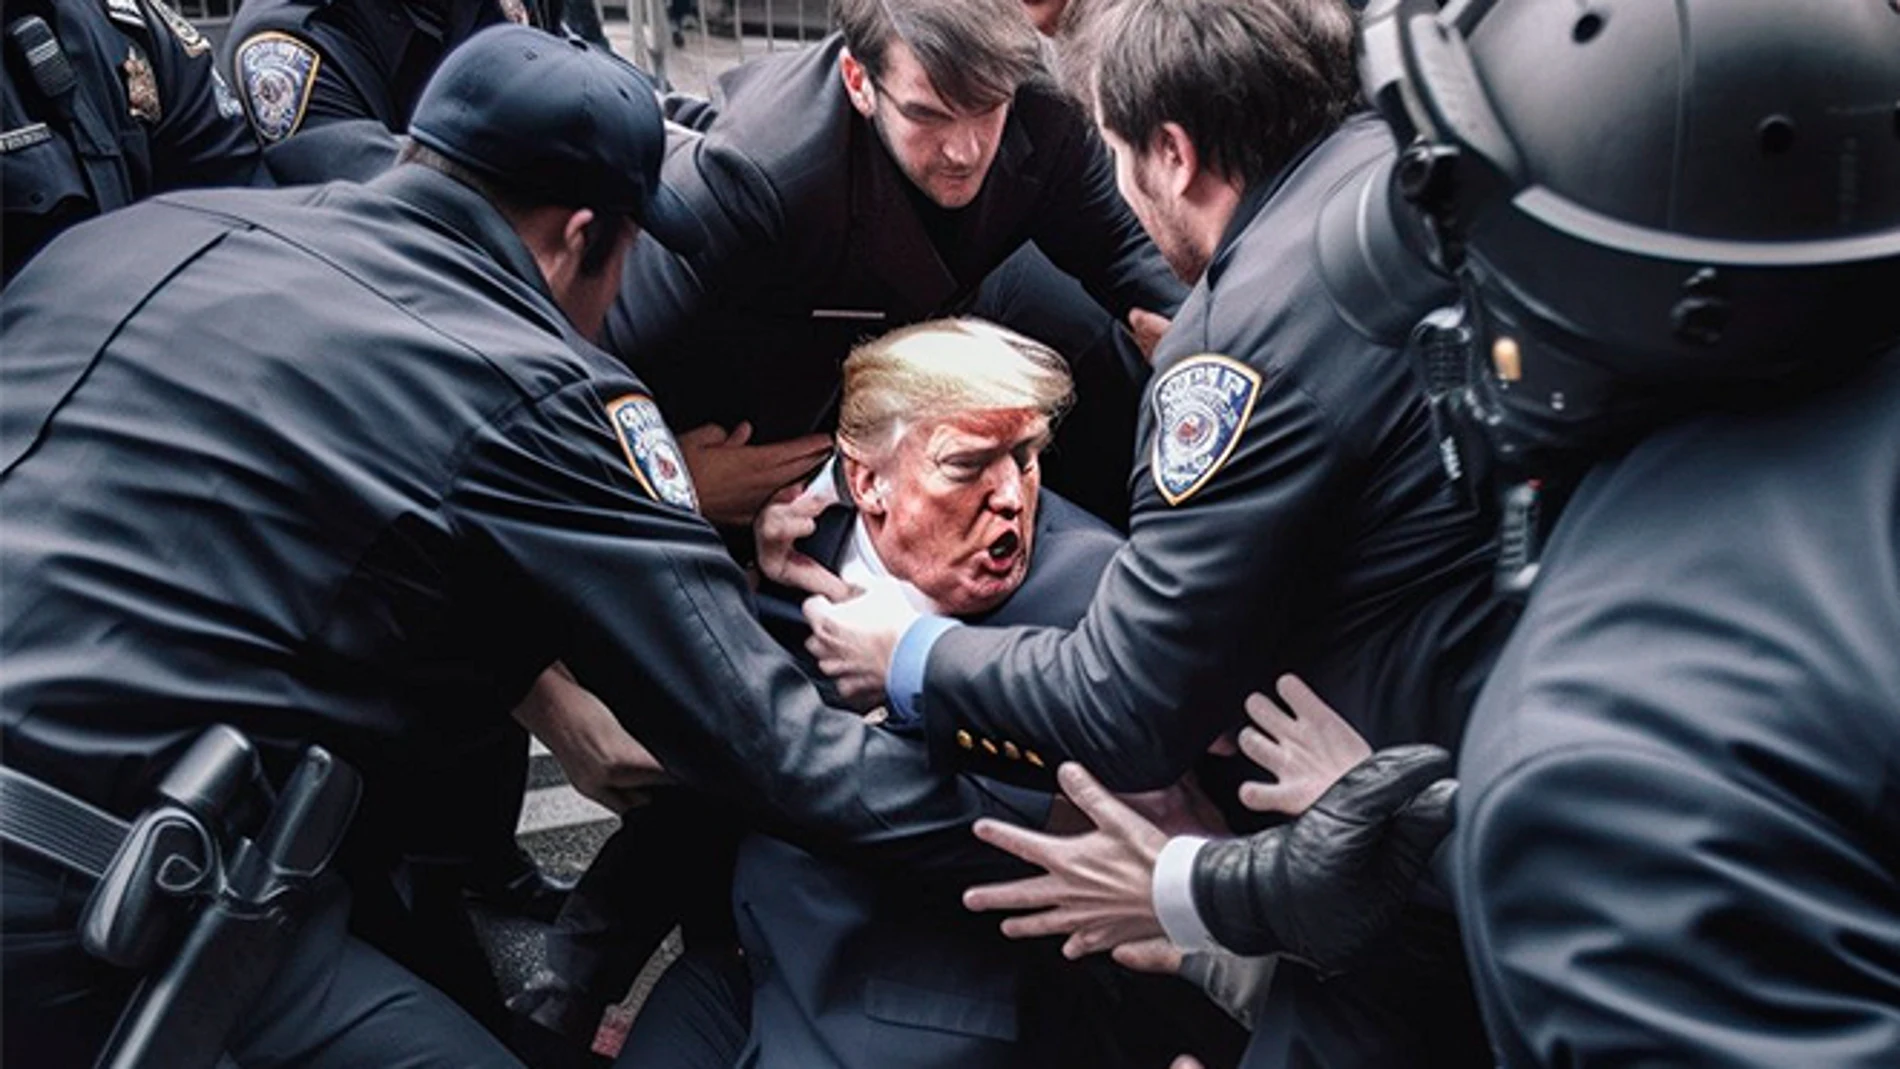 Crea un hilo viral con imágenes por IA de Donald Trump siendo arrestado y es expulsado de Midjourney.